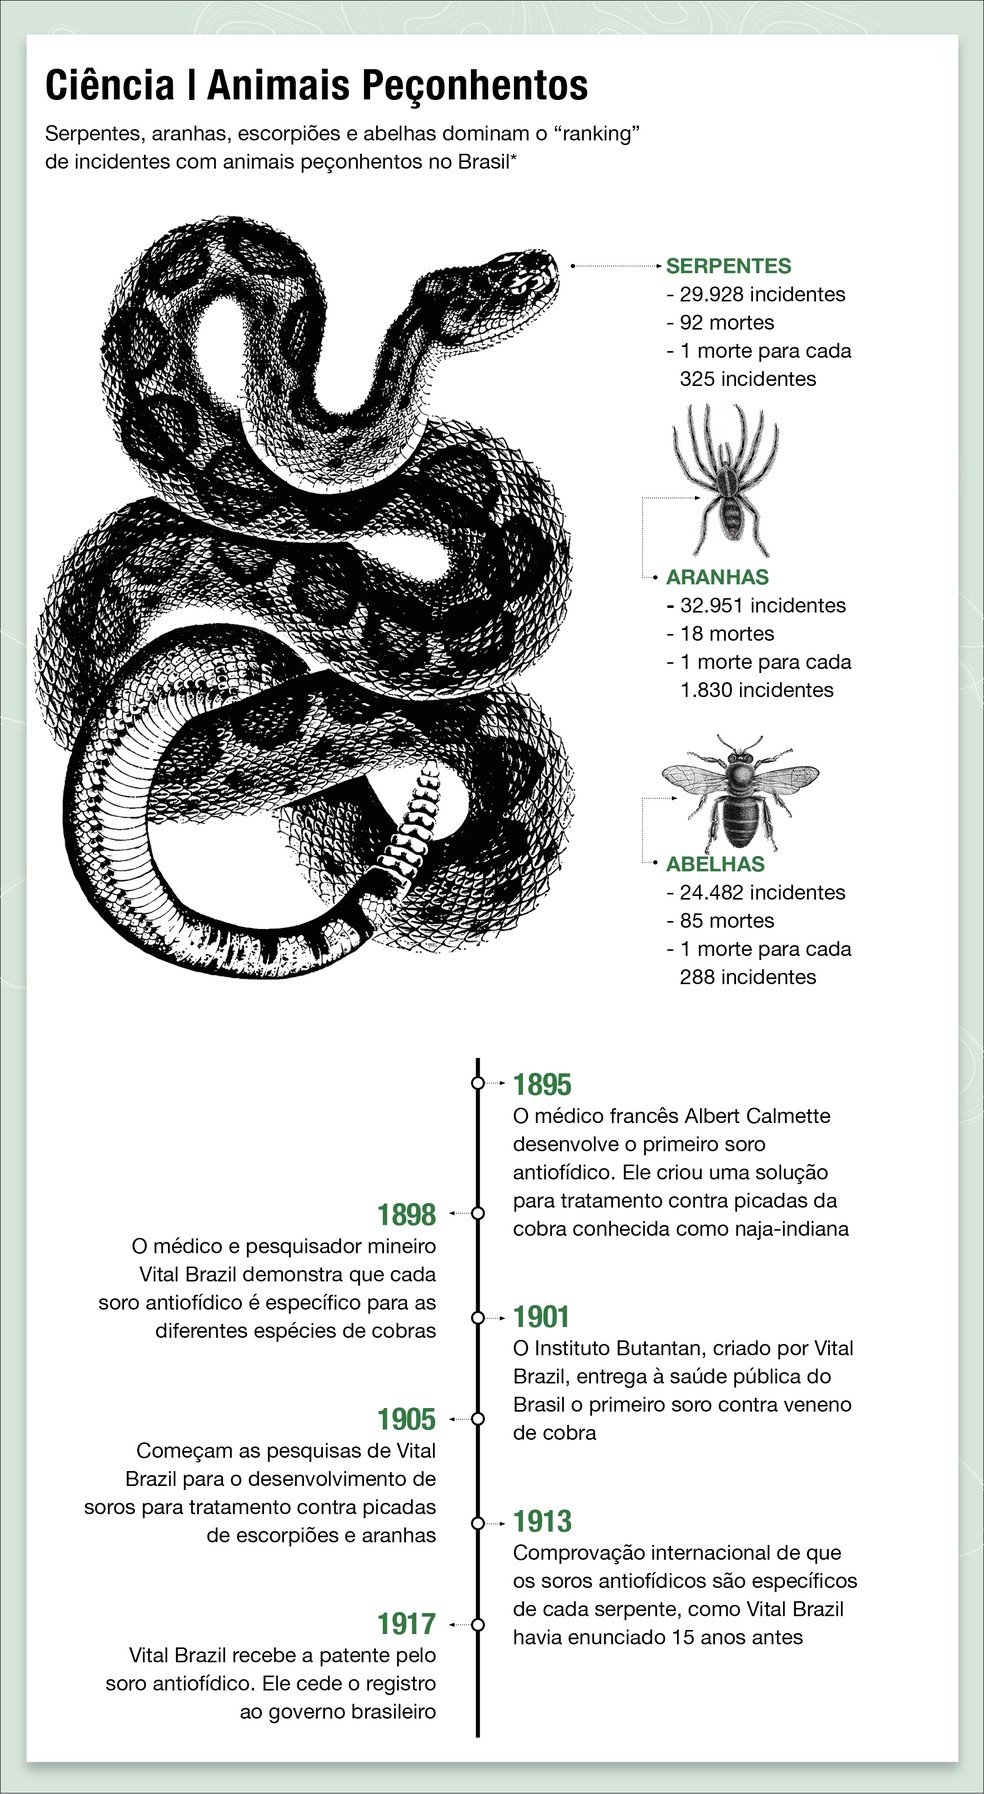 Em 1917, após a comprovação internacional de que os soros antiofídicos são específicos de cada serpente, Vital Brazil cedeu o registro ao governo brasileiro — Foto: Globo Rural